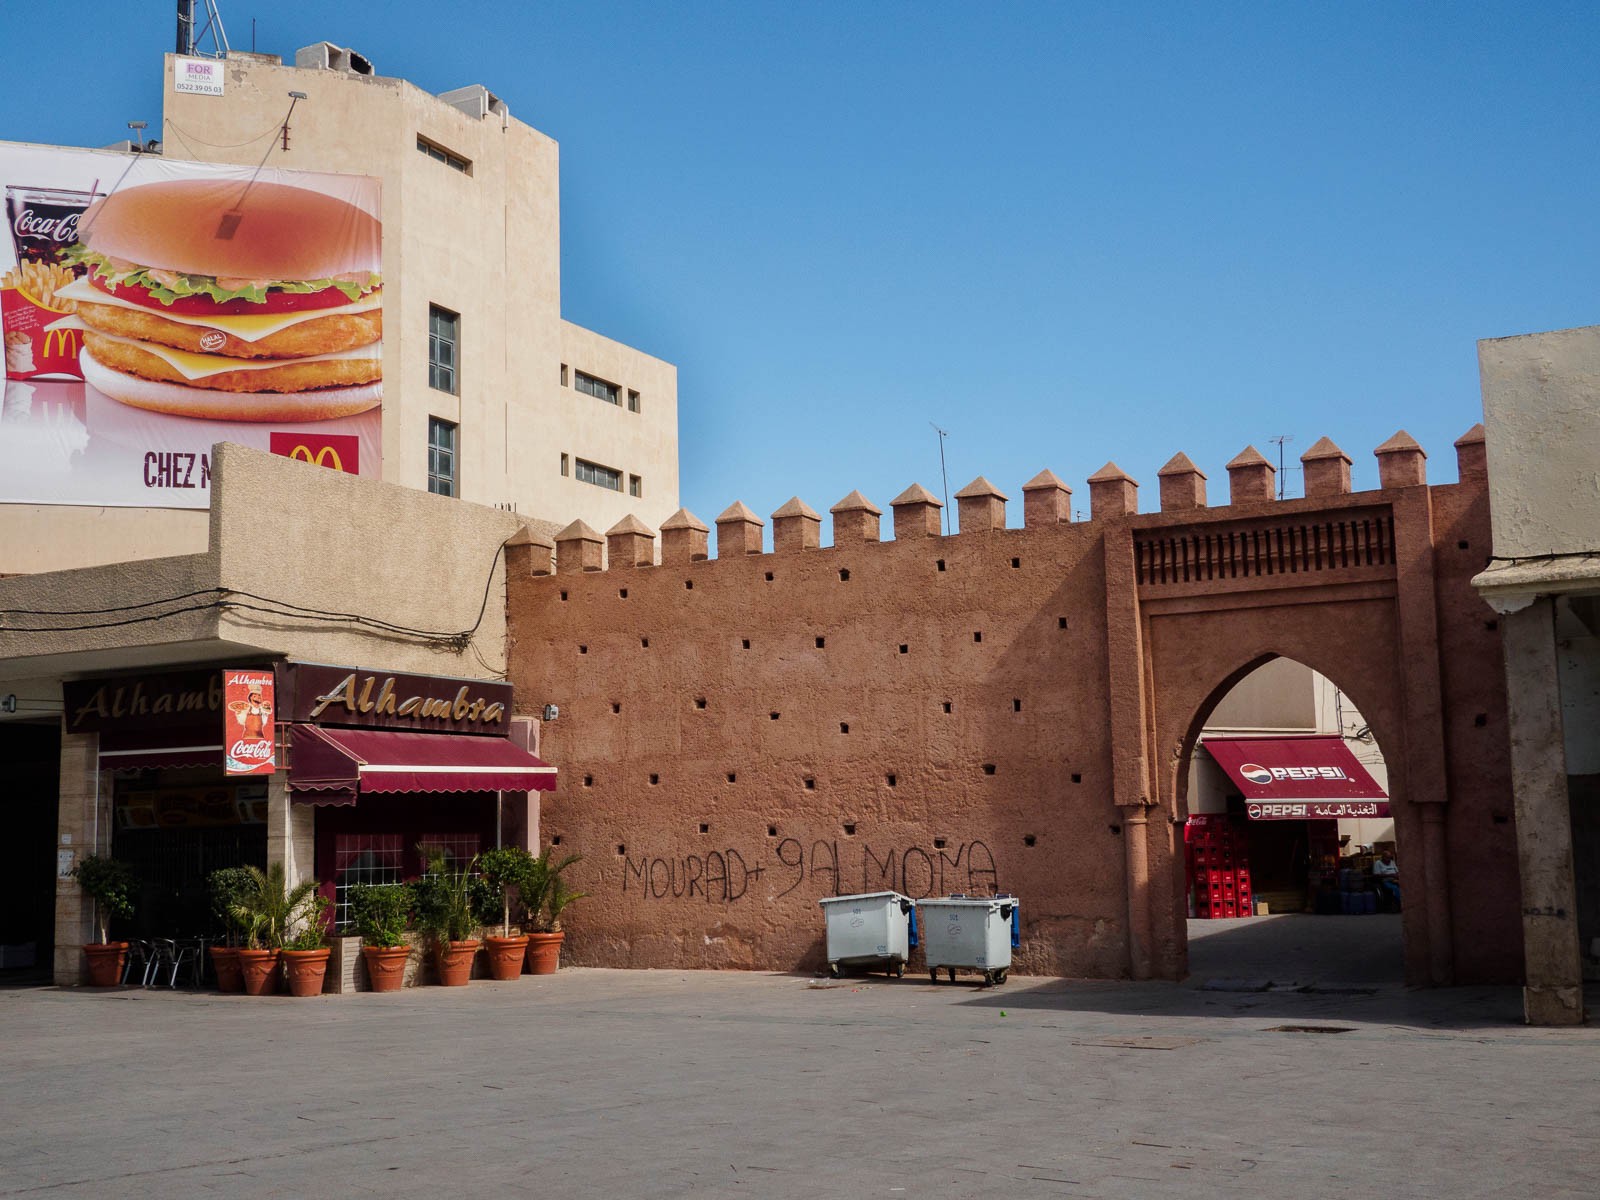 Publicidad de McDonalds junto a uno de los accesos a la medina de Oujda a través de la muralla.